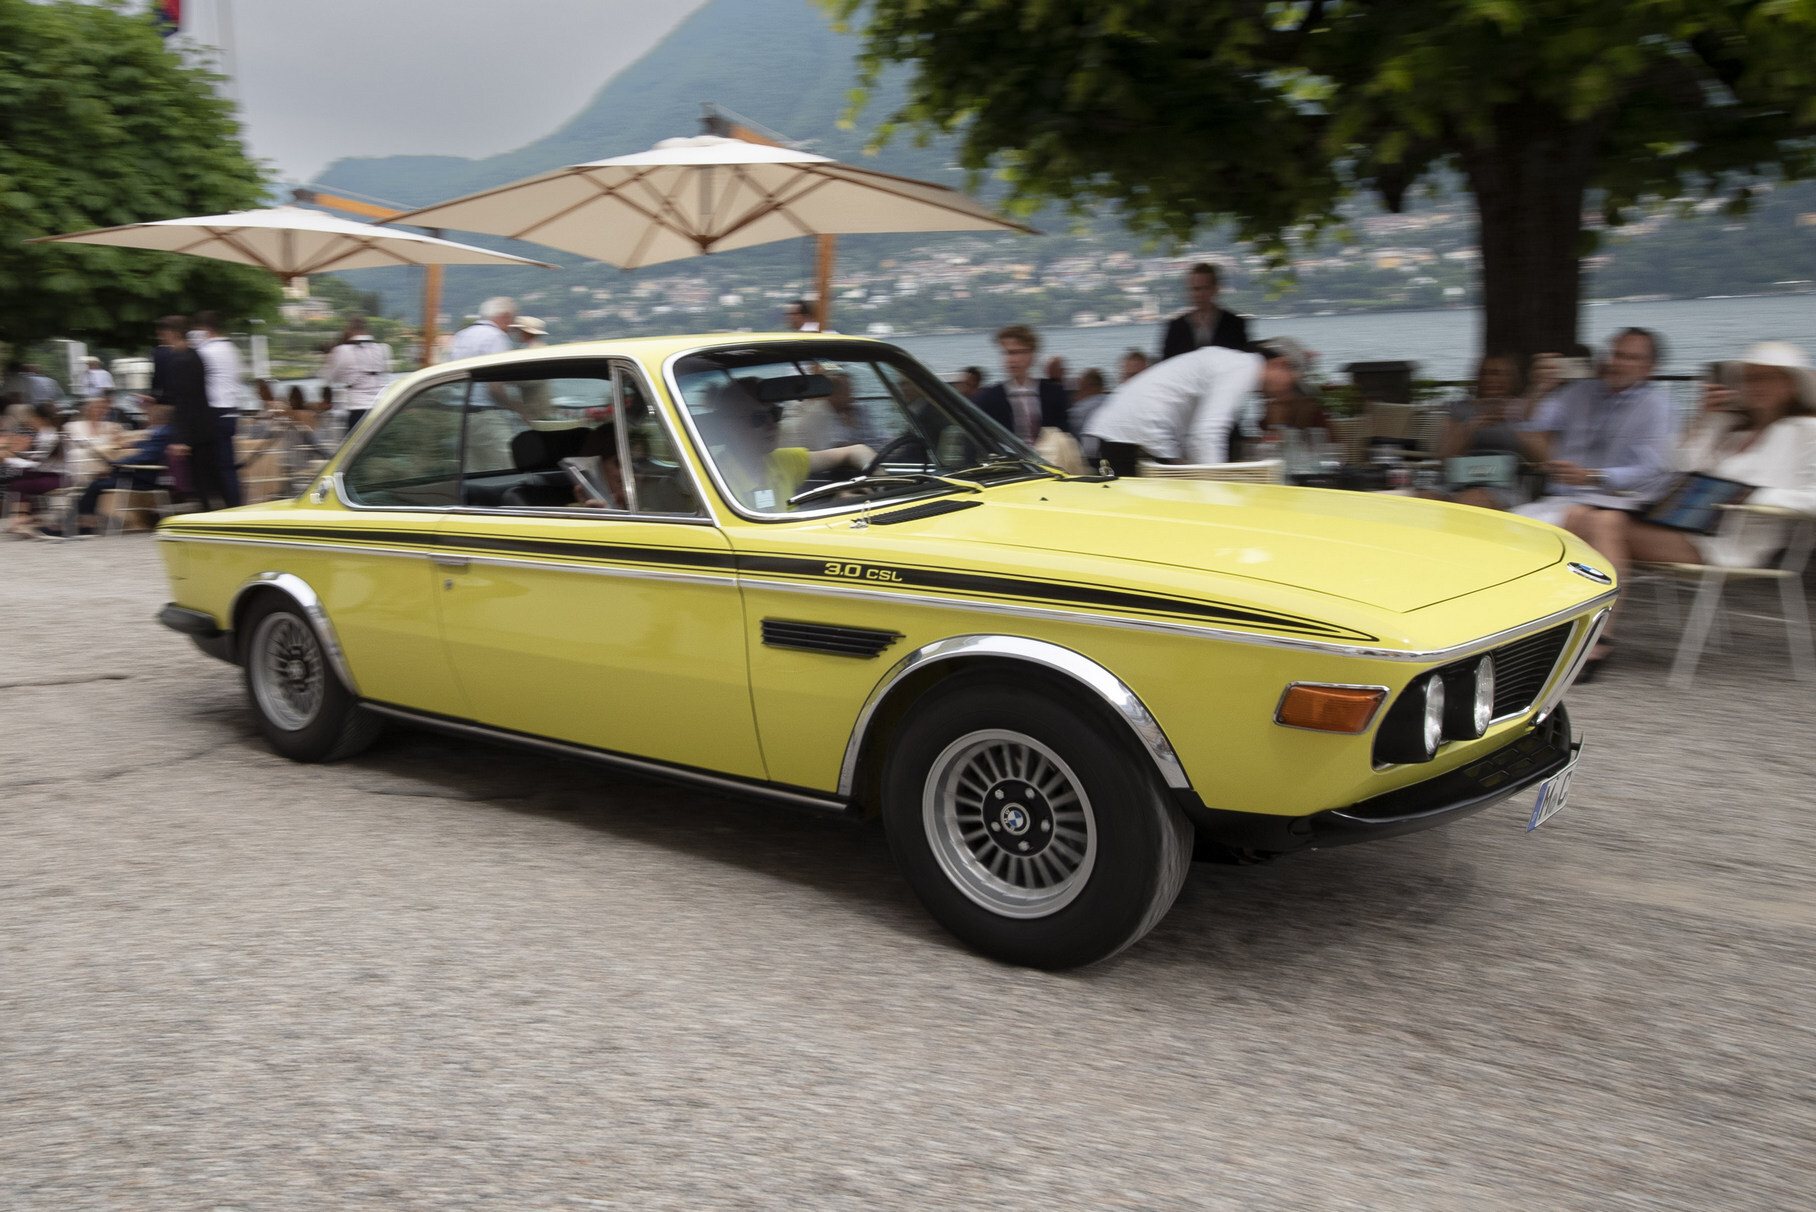 Благодаря усилиям людей из BMW Classic в Тиволи собрали множество редких «баварцев» — как этот BMW 3.0 CSL (облегчённый спортивный вариант купе серии E9). Именно этот лимонно-жёлтый красавец, принадлежащий профессору медицины Михаэлю Ульбигу из Германии, был признан победителем в категории «M-автомобили BMW и их предки»